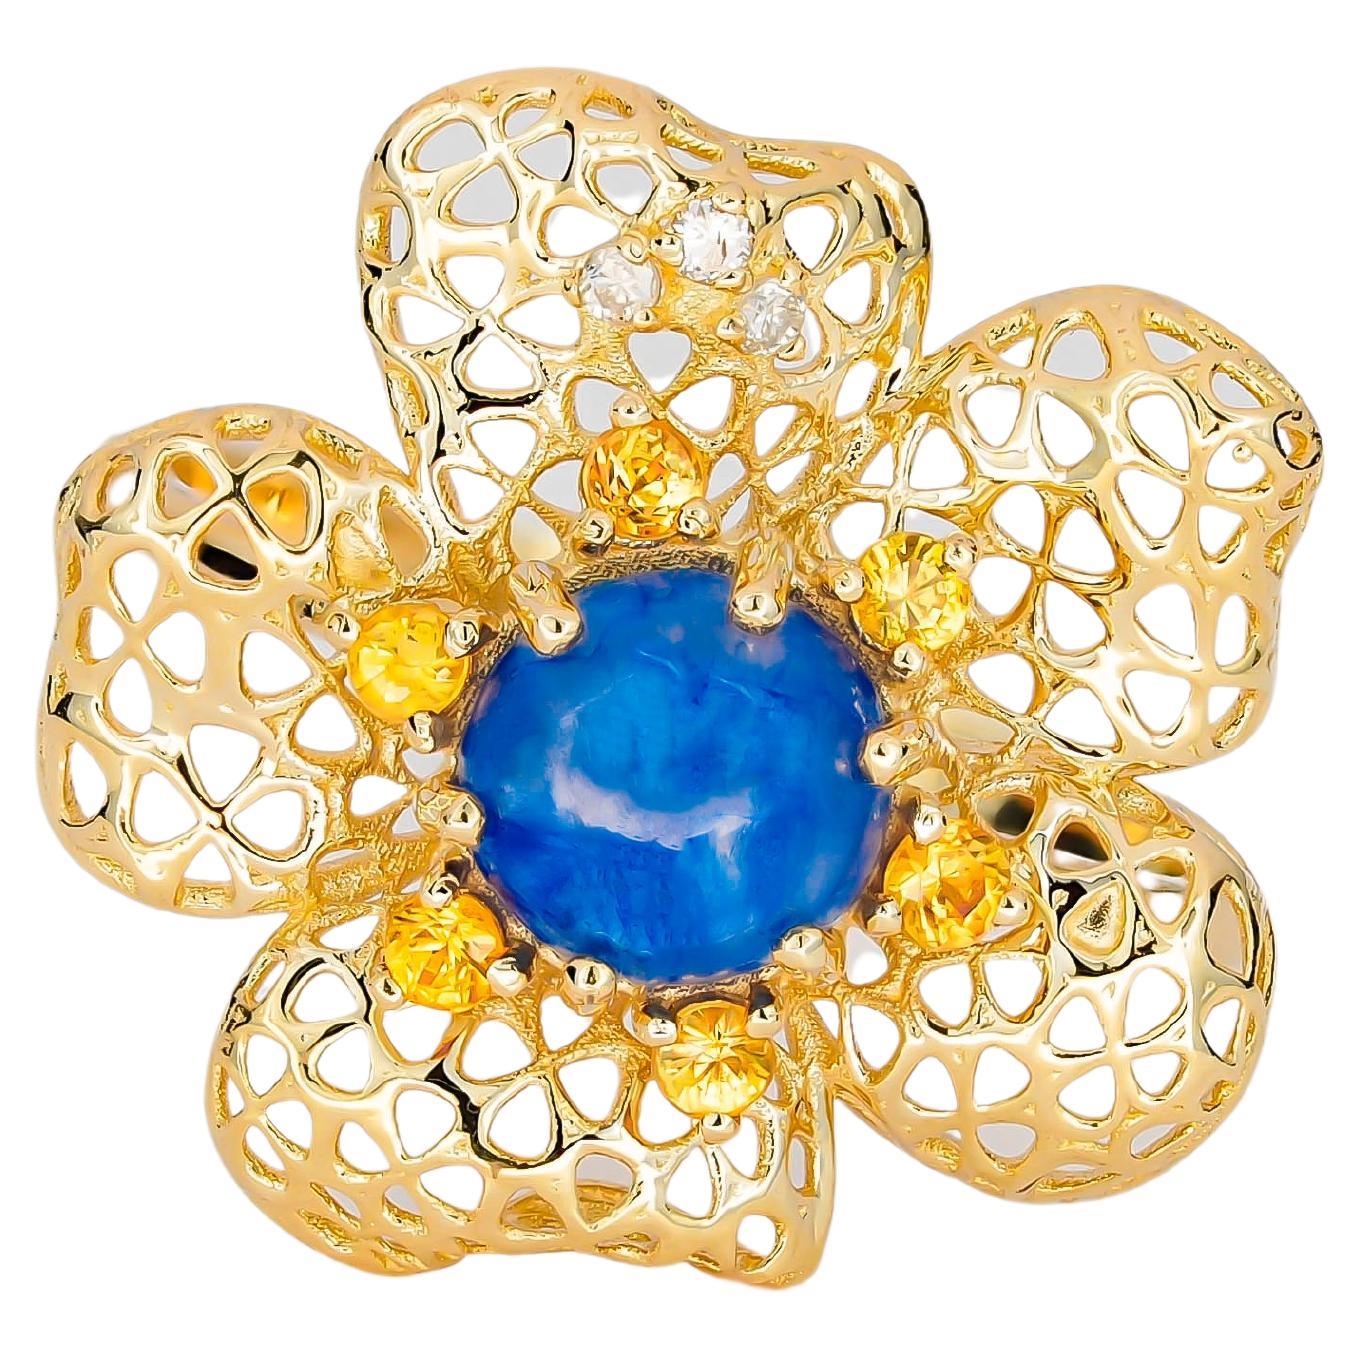 „Flower“-Ring mit zentralem Saphir, Cabochon, gelben Saphiren und Diamanten